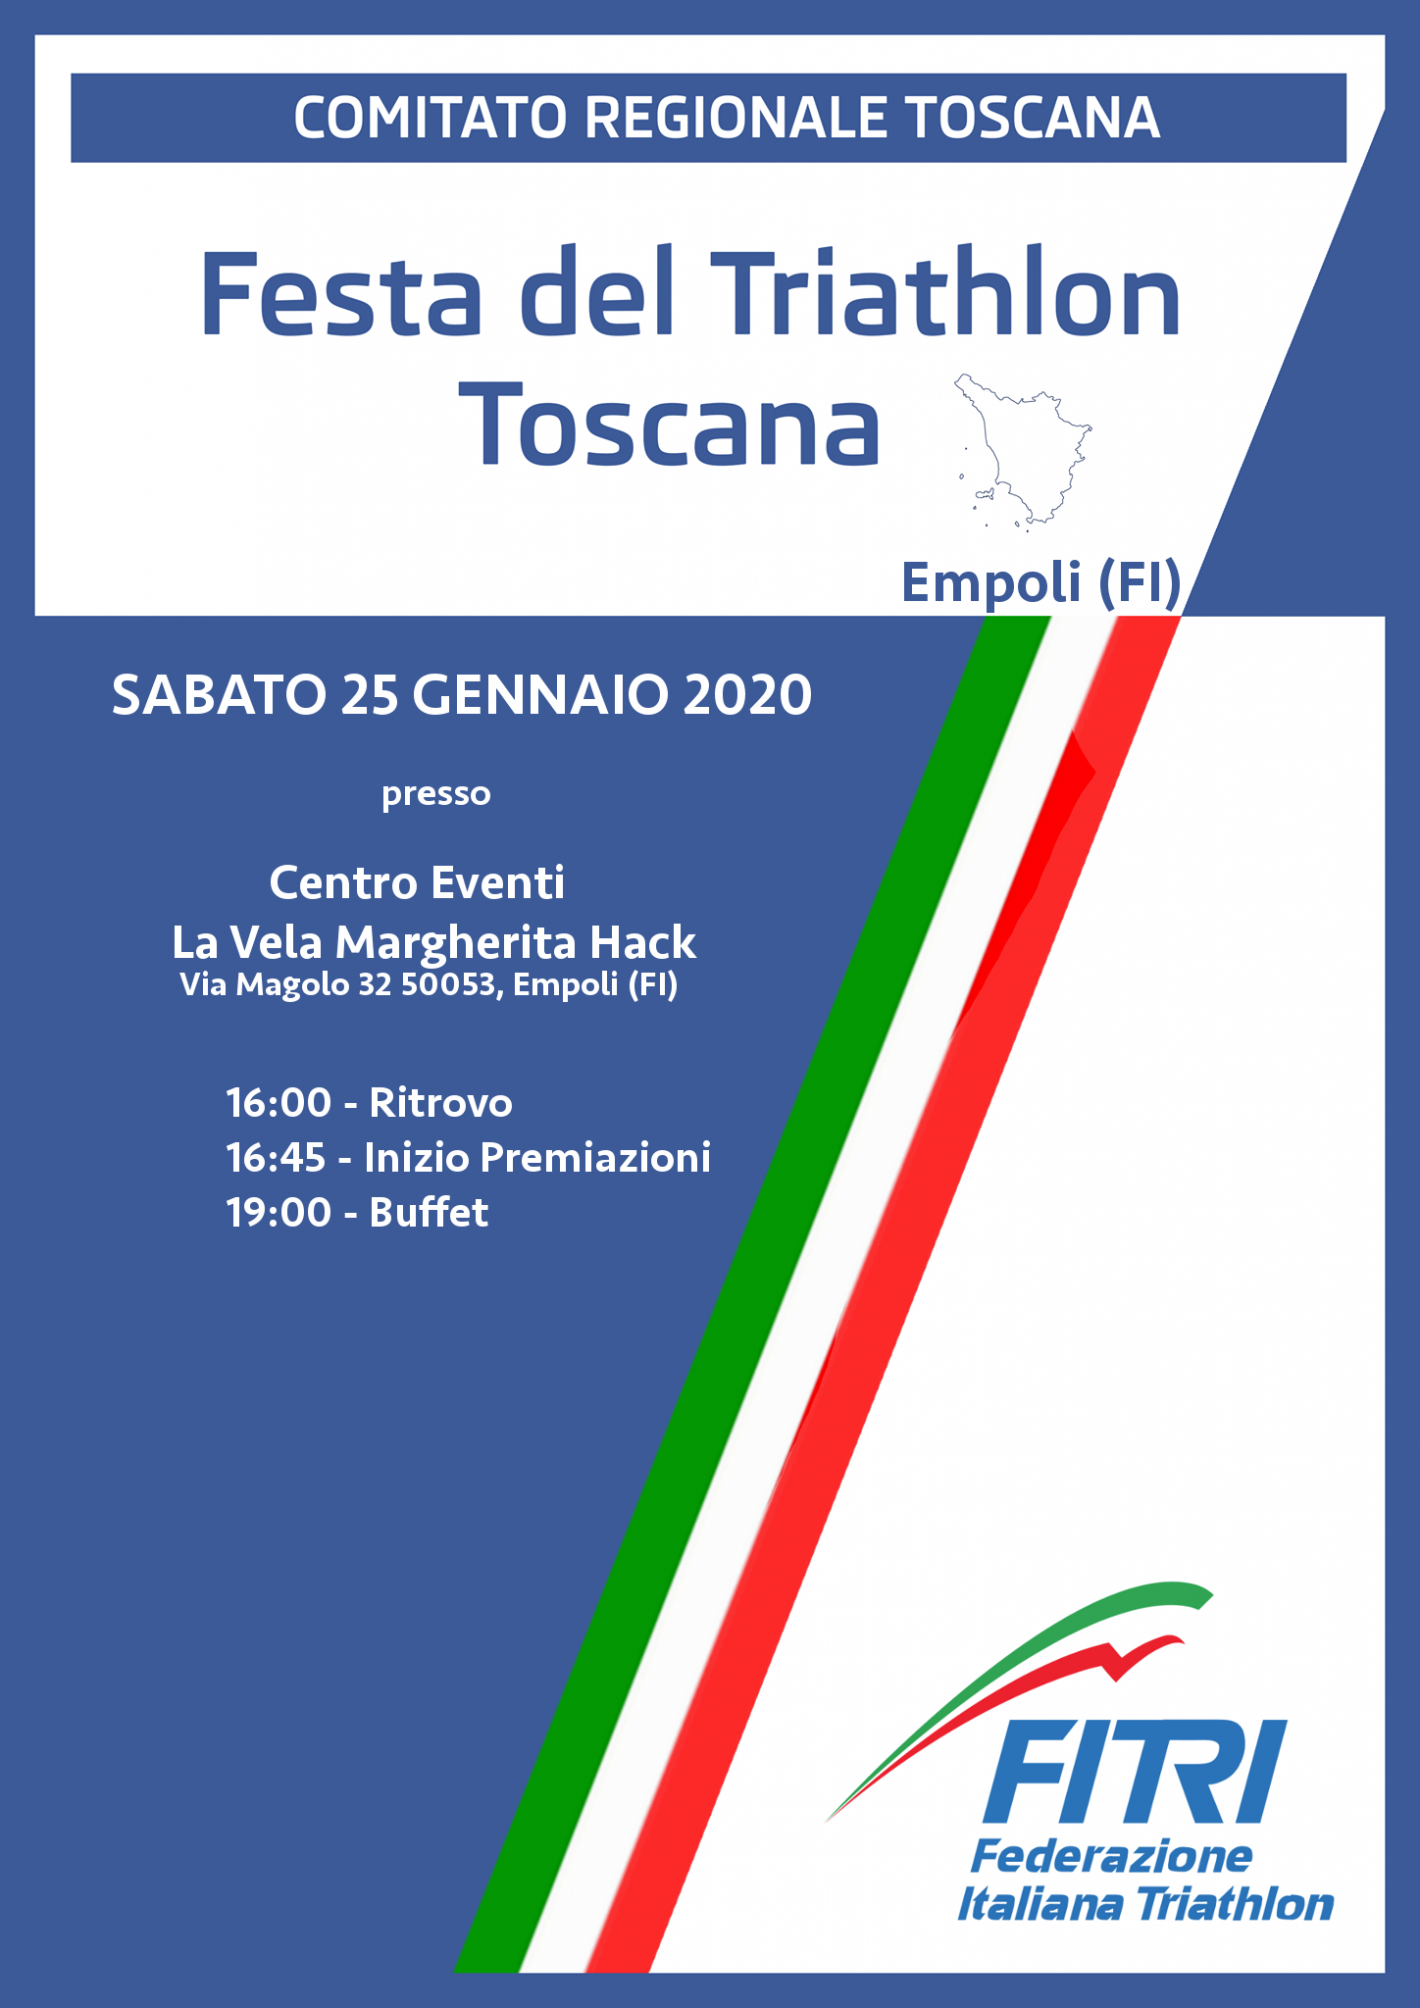 images/toscana/IMMAGINI_PER_ARTICOLI/2019/medium/locandina_festa_triathlon2019.png